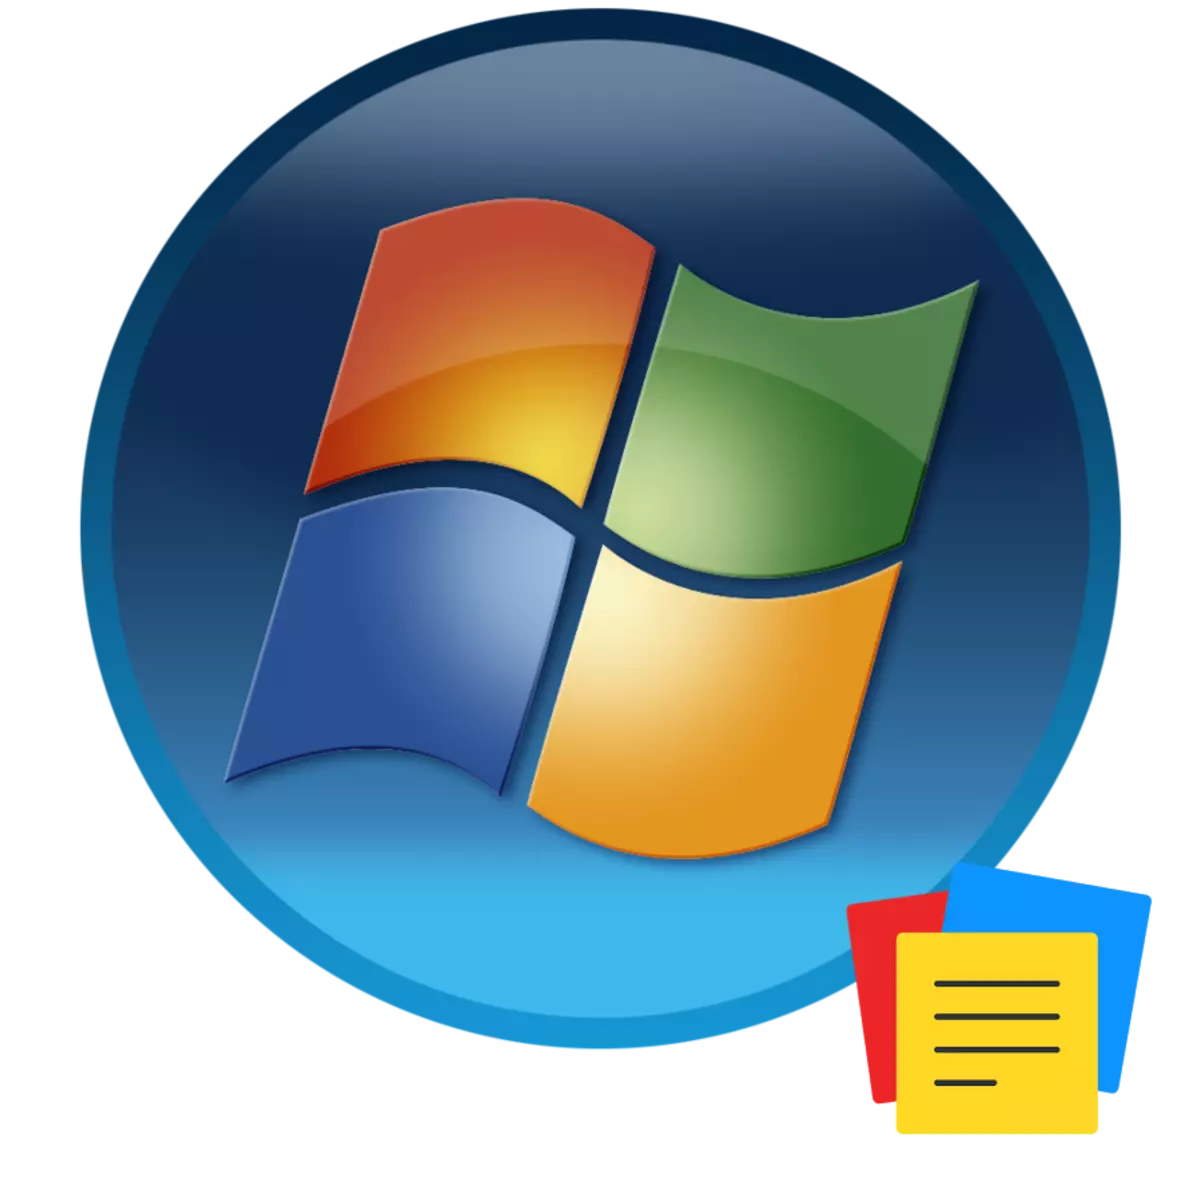 በ Windows 7 ውስጥ Gadgets ማስታወሻዎች